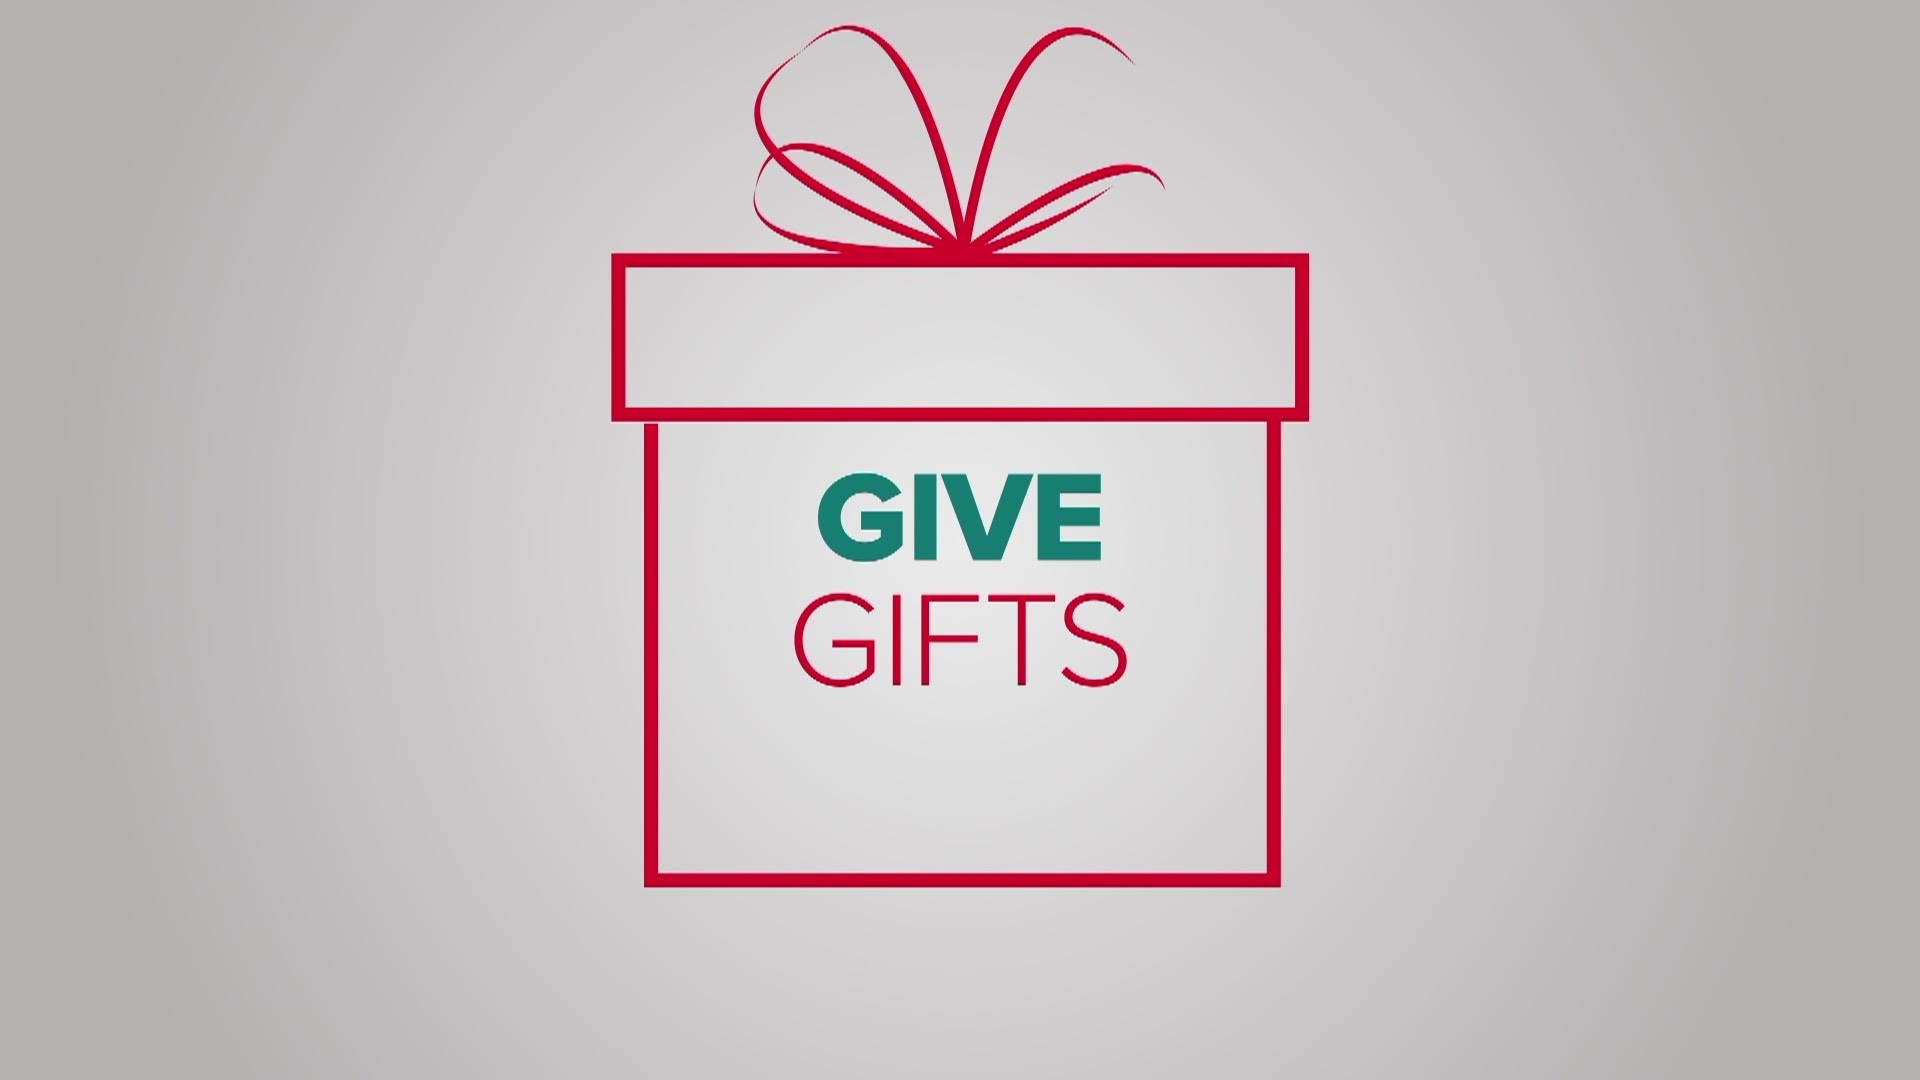 Give Gifts - 5NEWS Christmas 2020